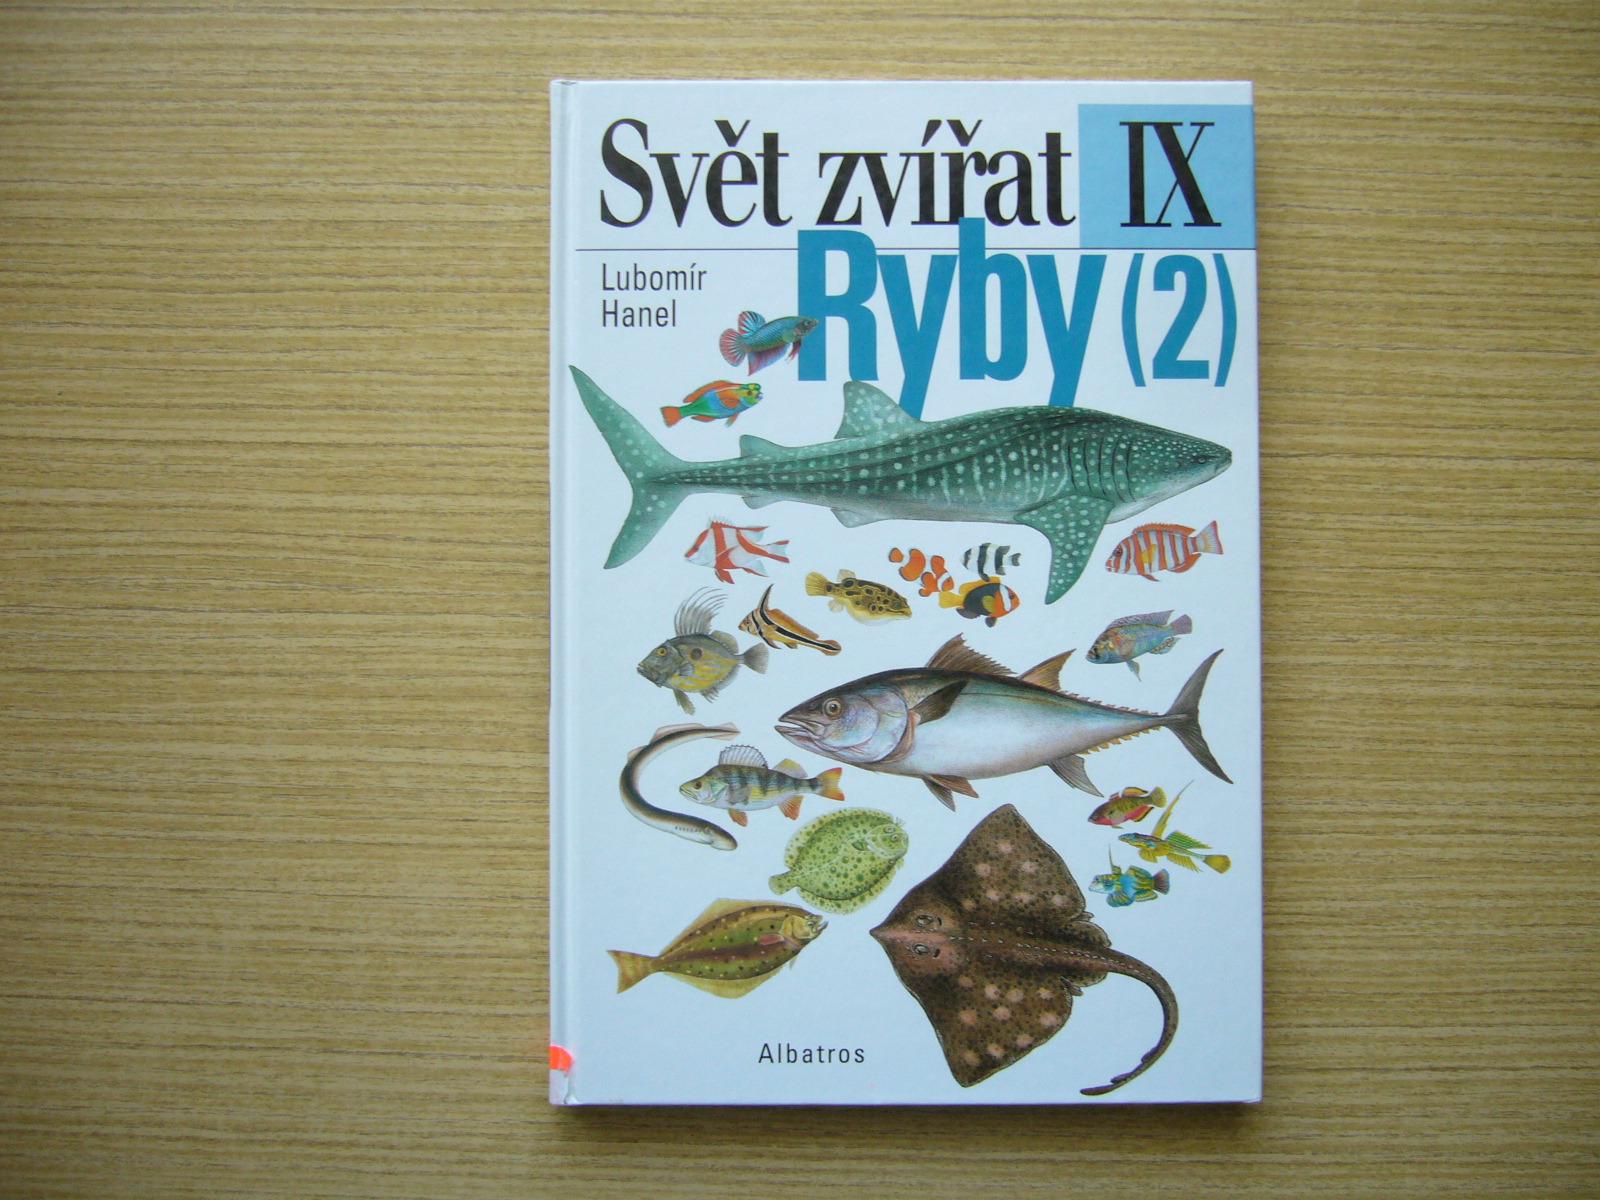 Lubomír Hanel - Svet zvierat IX: Ryby 2 | 2000 -a - Odborné knihy